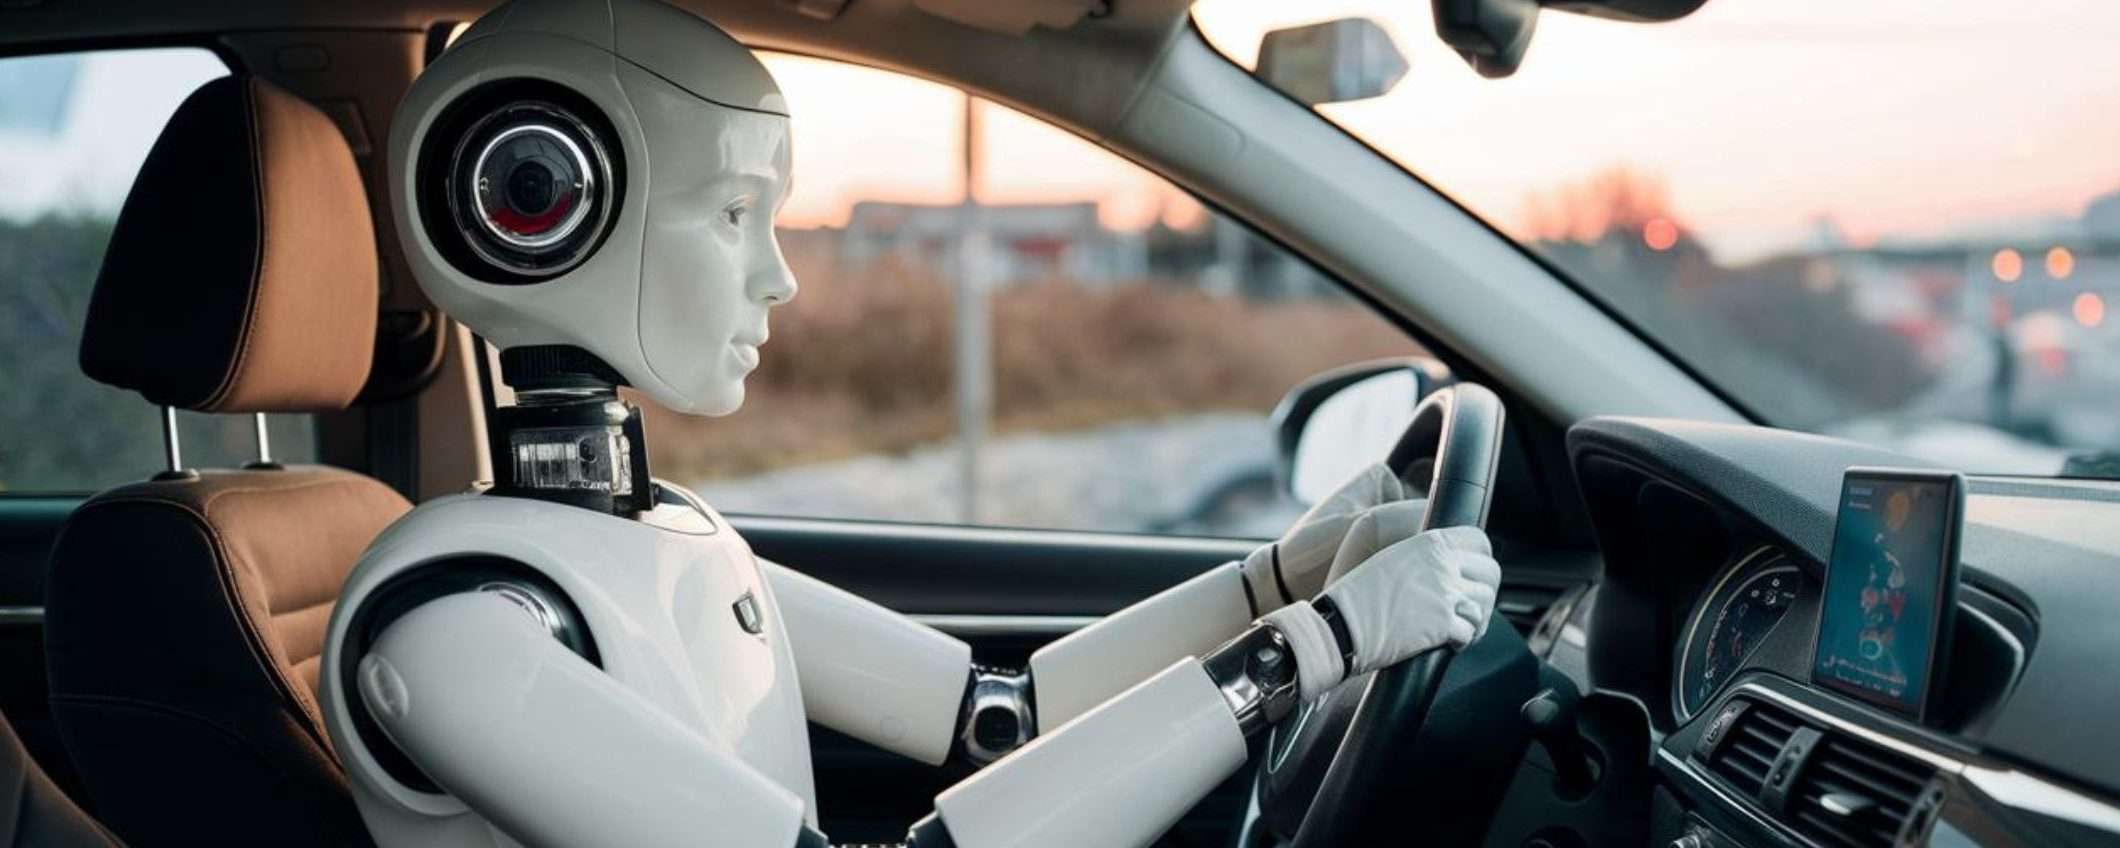 Questo robot umanoide può guidare le auto, più o meno